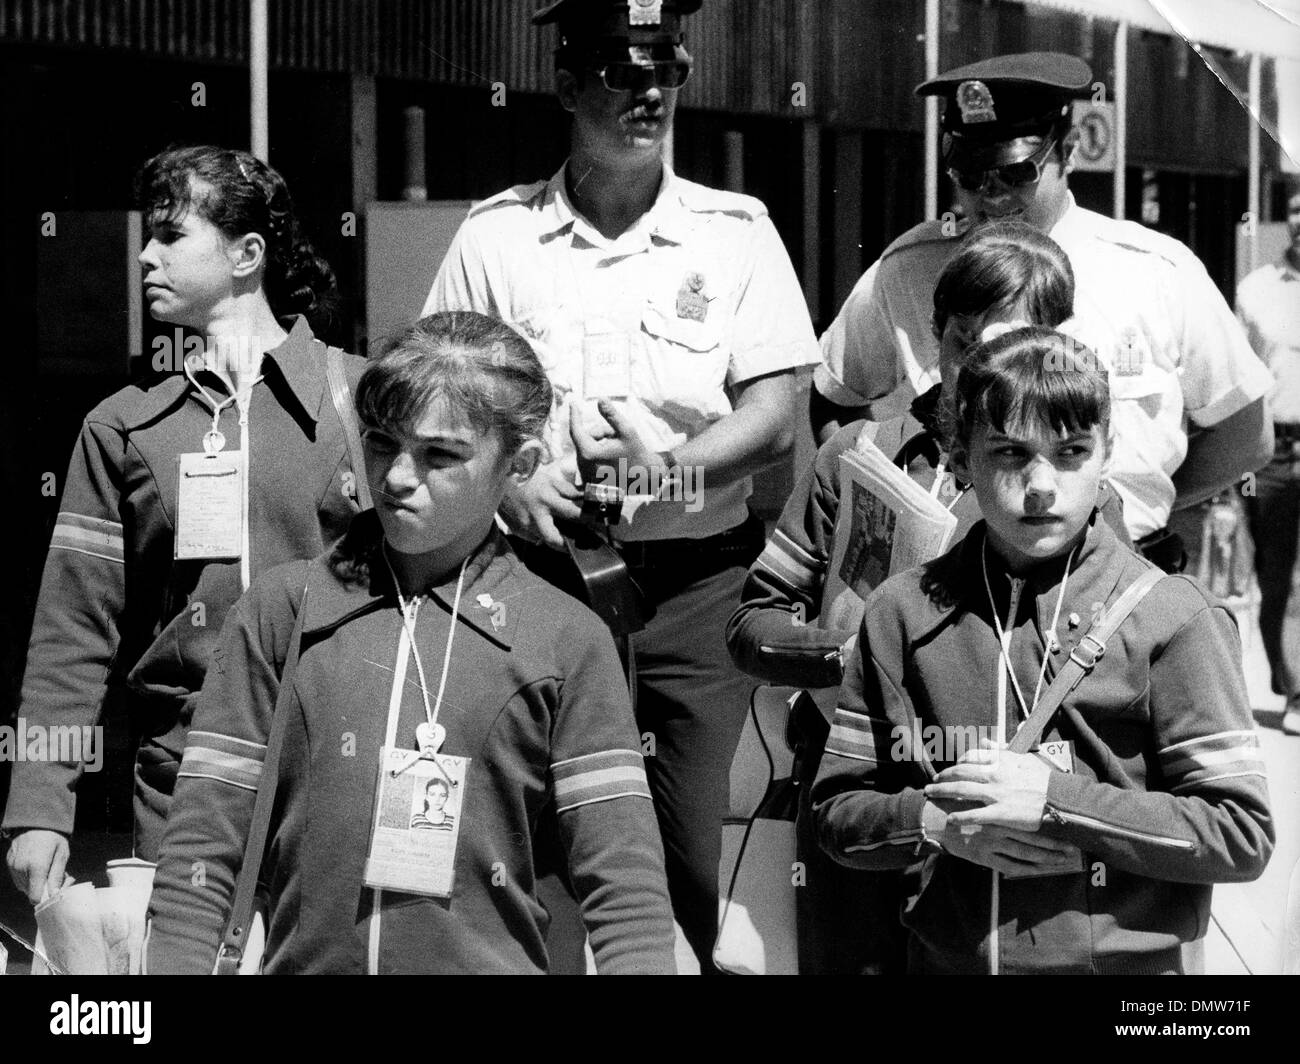 Luglio 26, 1976 - Montreal, Canada - ginnasta Nadia Comaneci passeggiate con i suoi compagni di squadra e una scorta di polizia attraverso il Villaggio Olimpico durante i Giochi Olimpici di Montreal. (Credito Immagine: © Keystone Pictures USA/ZUMAPRESS.com) Foto Stock